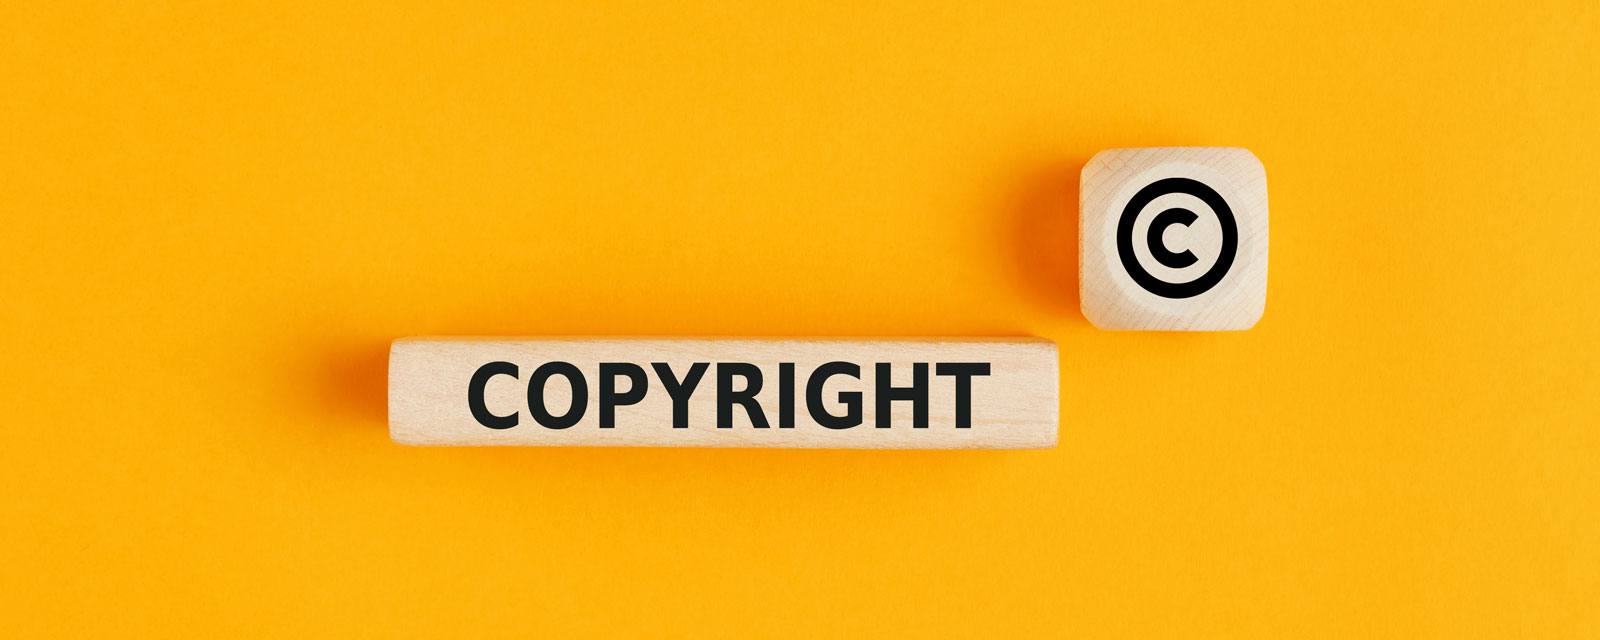 Urheberrecht, Urheberrechtsverletzung, Schutz des geistigen Eigentums